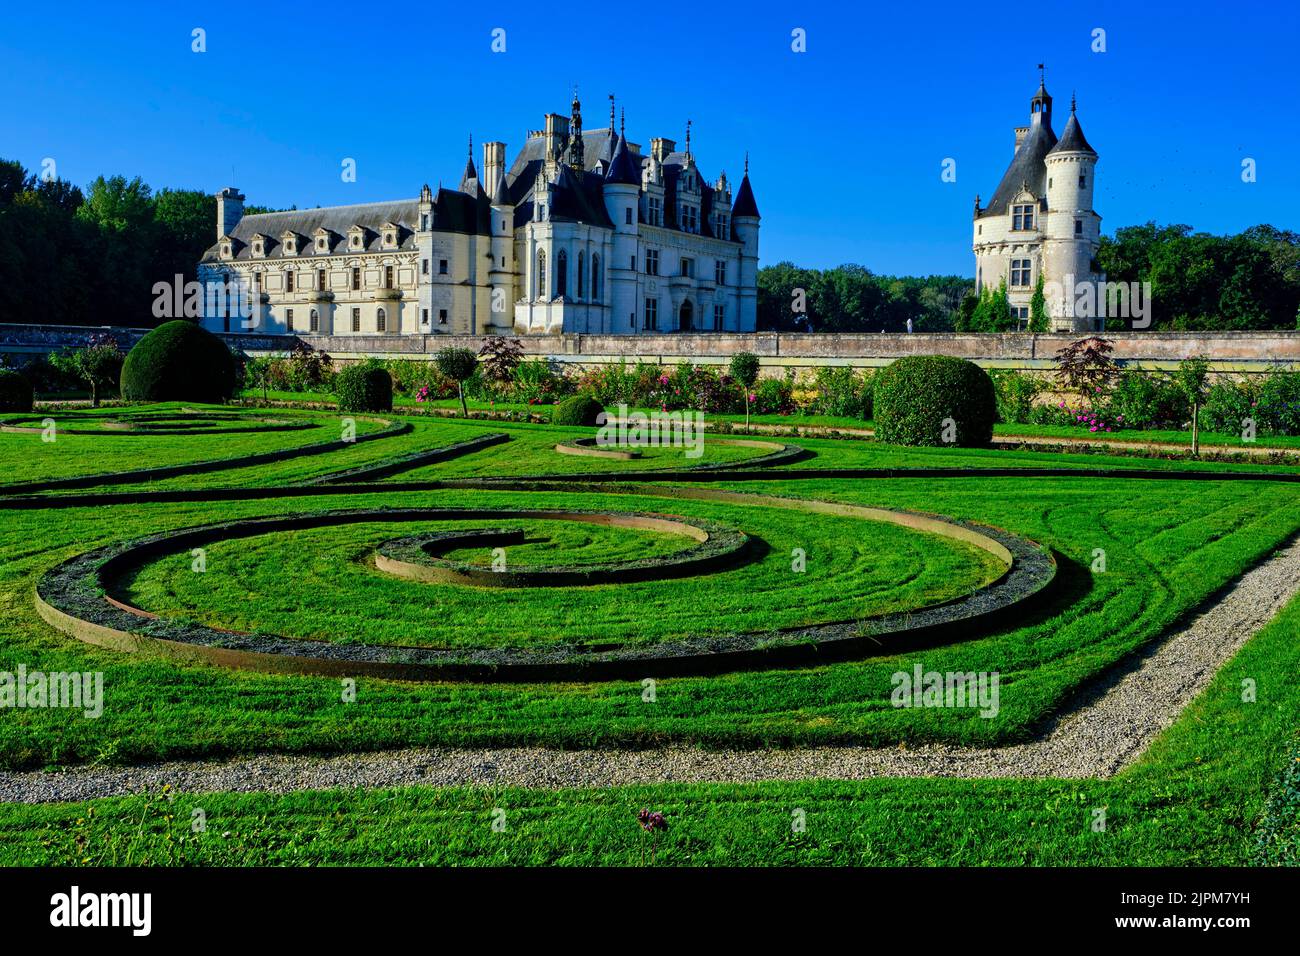 France, Indre et Loire, Château de Chenonceau, built from 1513 to 1521 in Renaissance style, the gardens, parterre of Diane de Poitiers Stock Photo